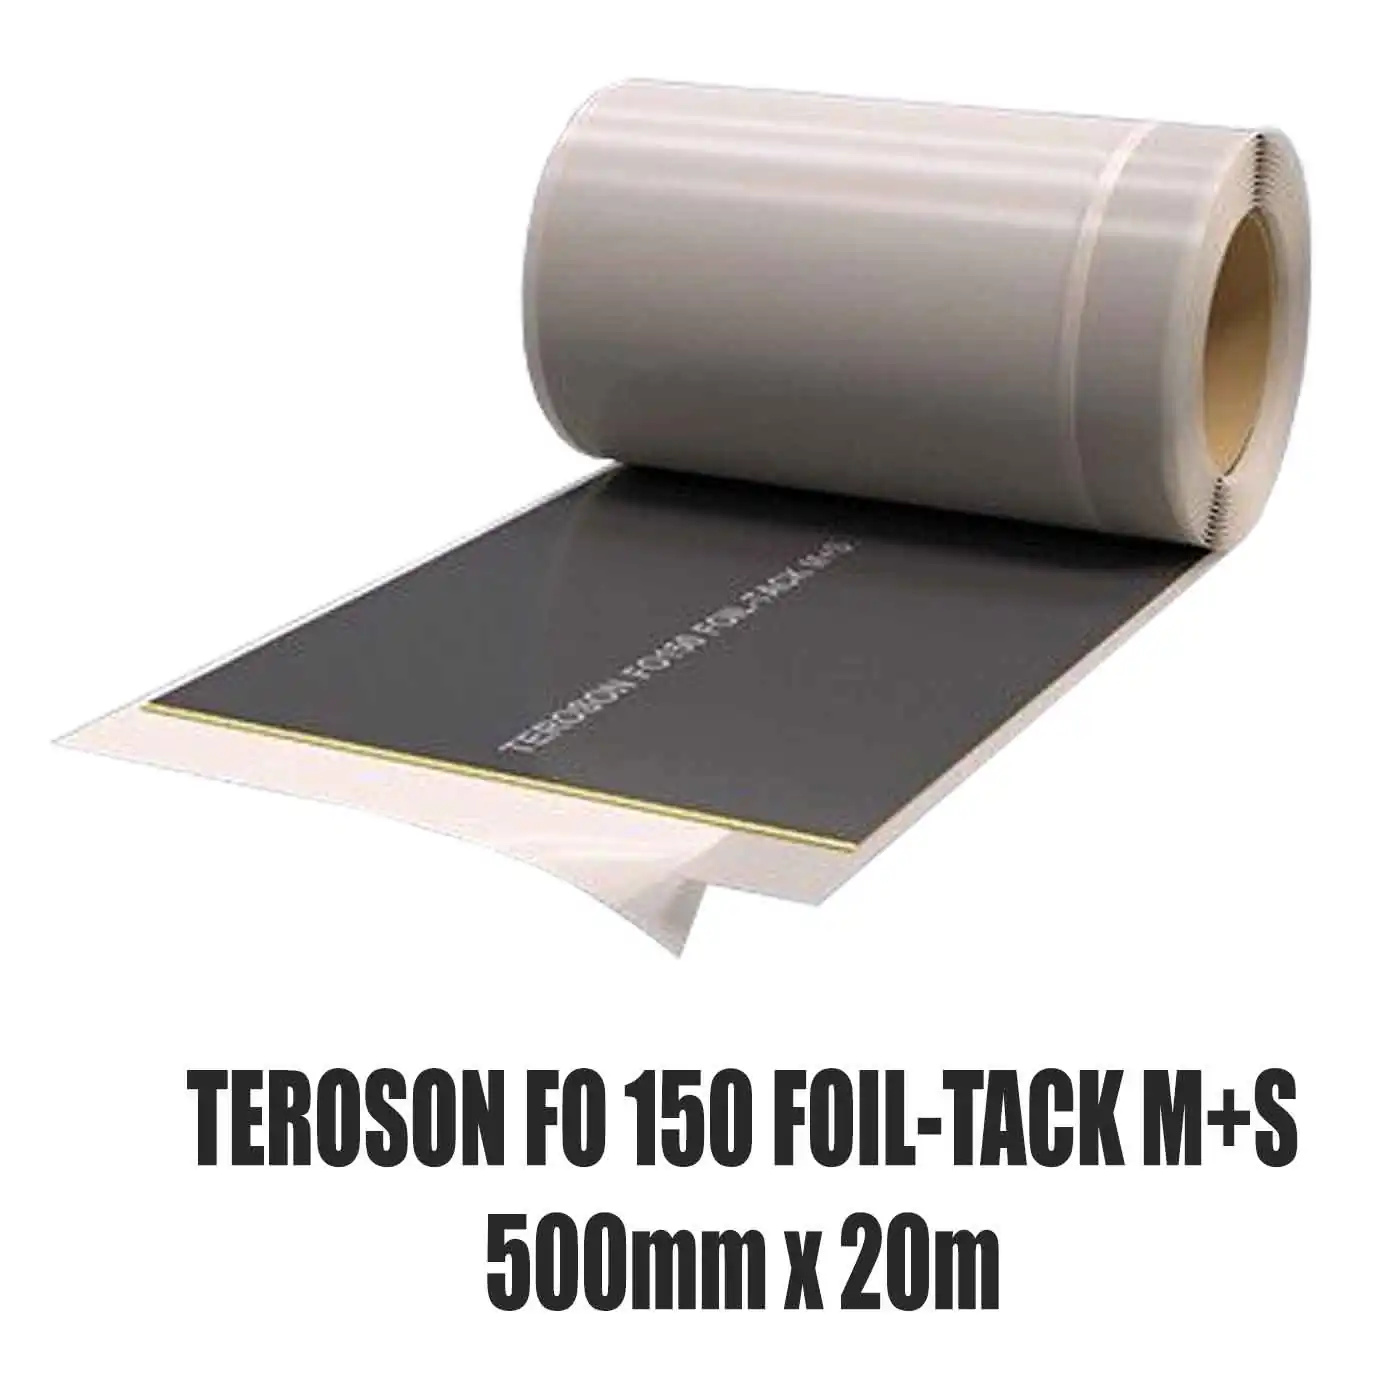 Dichtfolie TEROSON FO 150 FOIL-TACK M+S 500 mm x 20 m